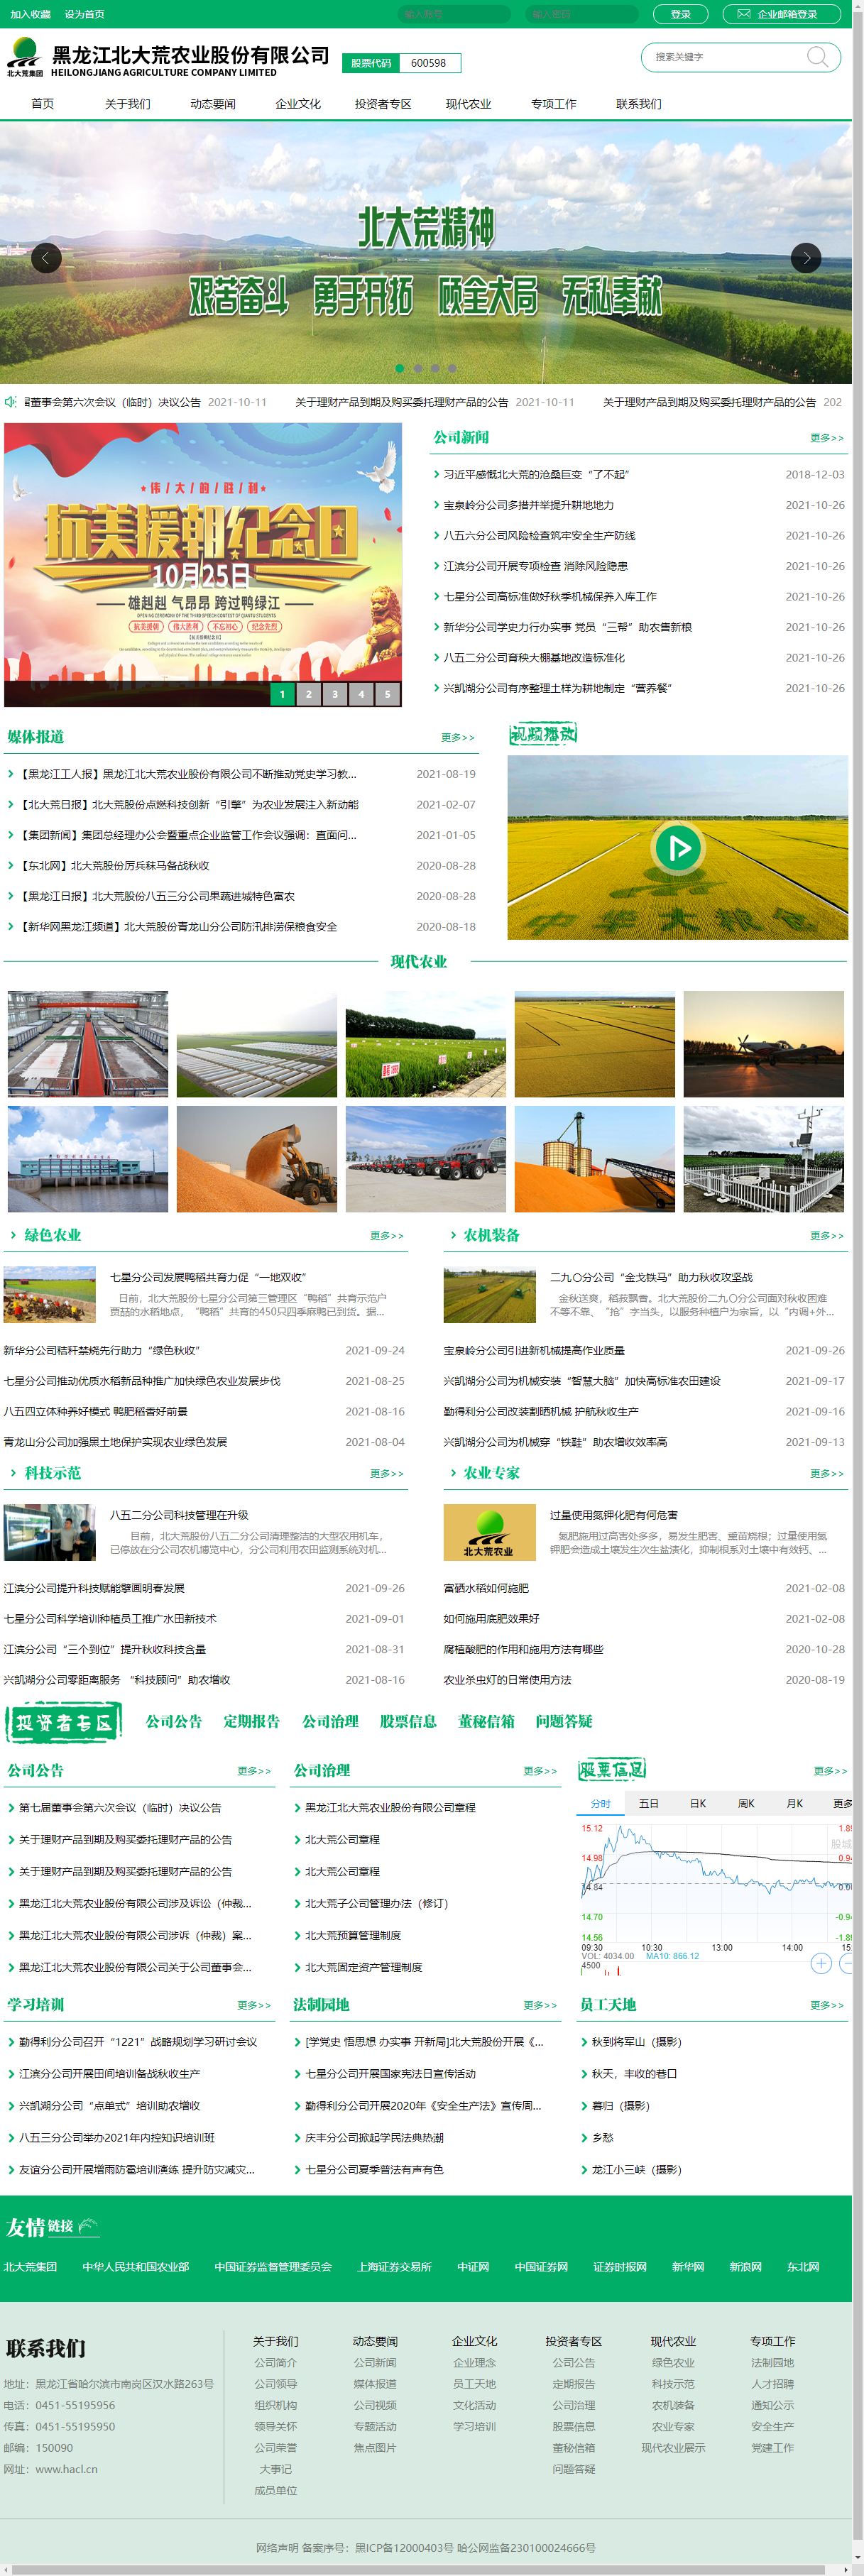 黑龙江北大荒农业股份有限公司网站案例